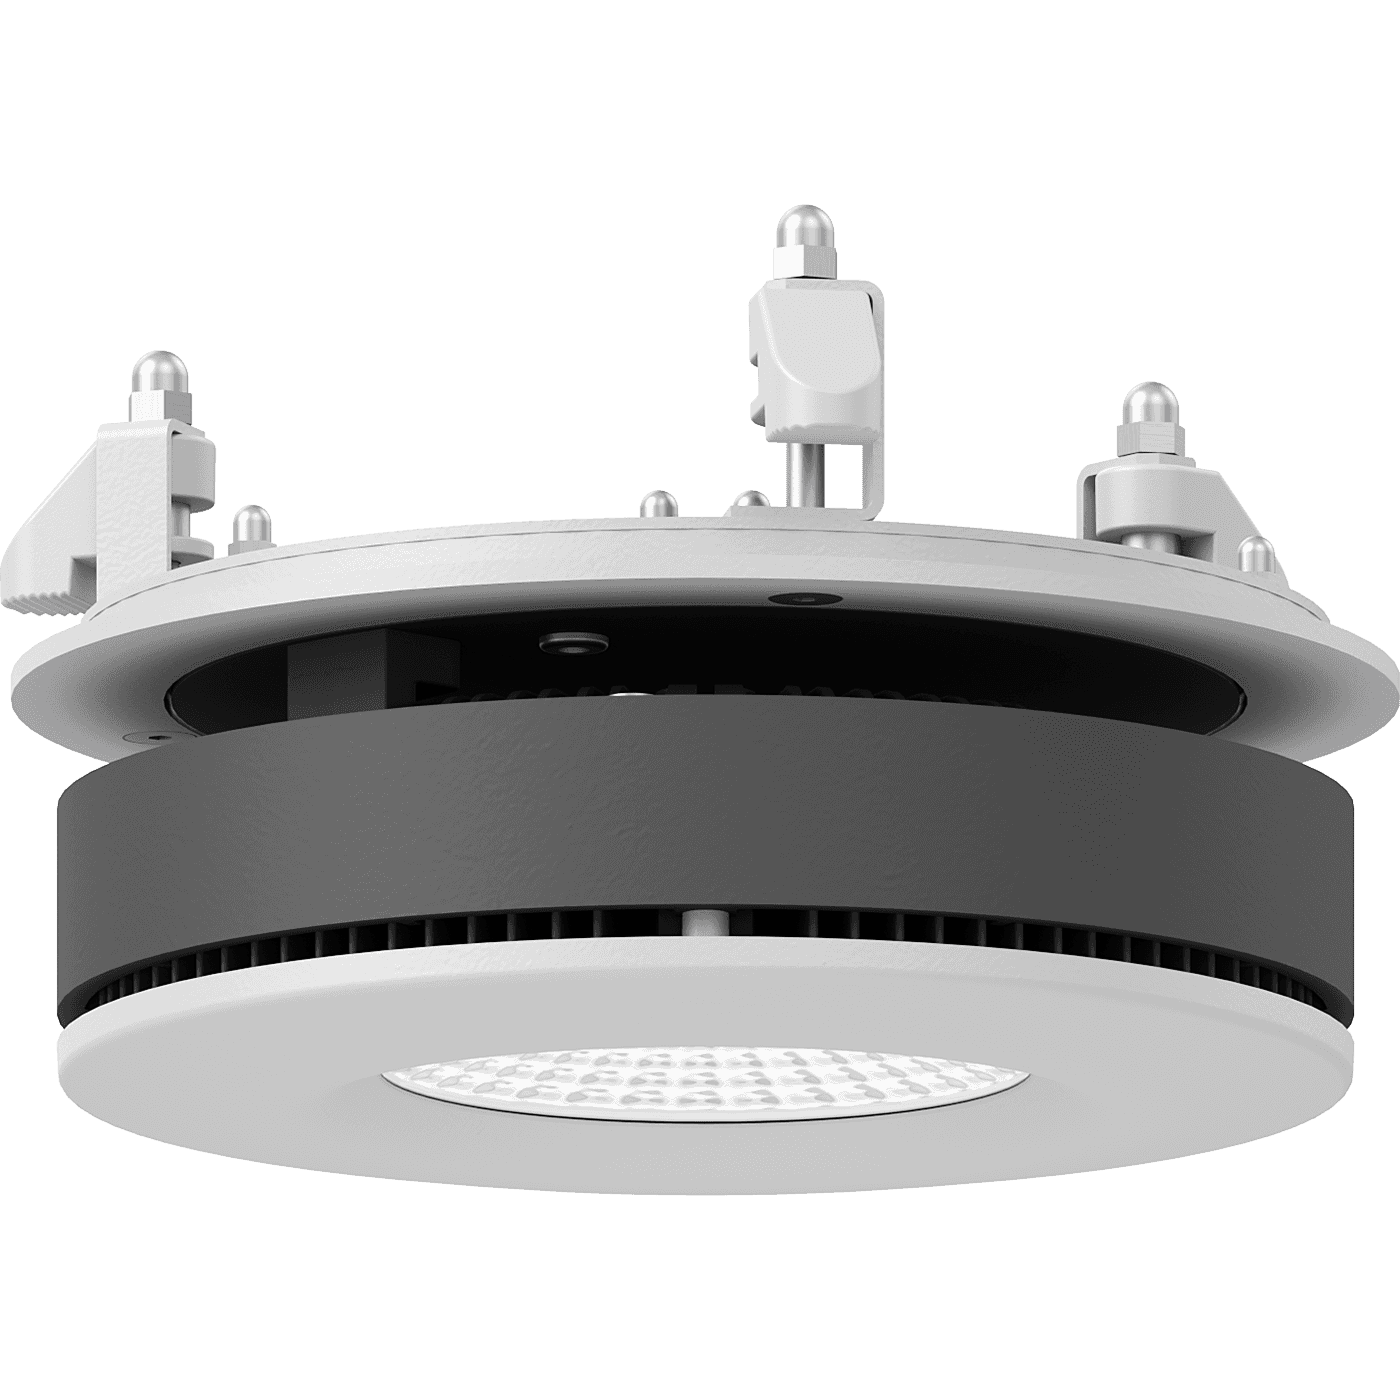 даунлайты UFO DL LED 25 D24 4000K, артикул 1170001220